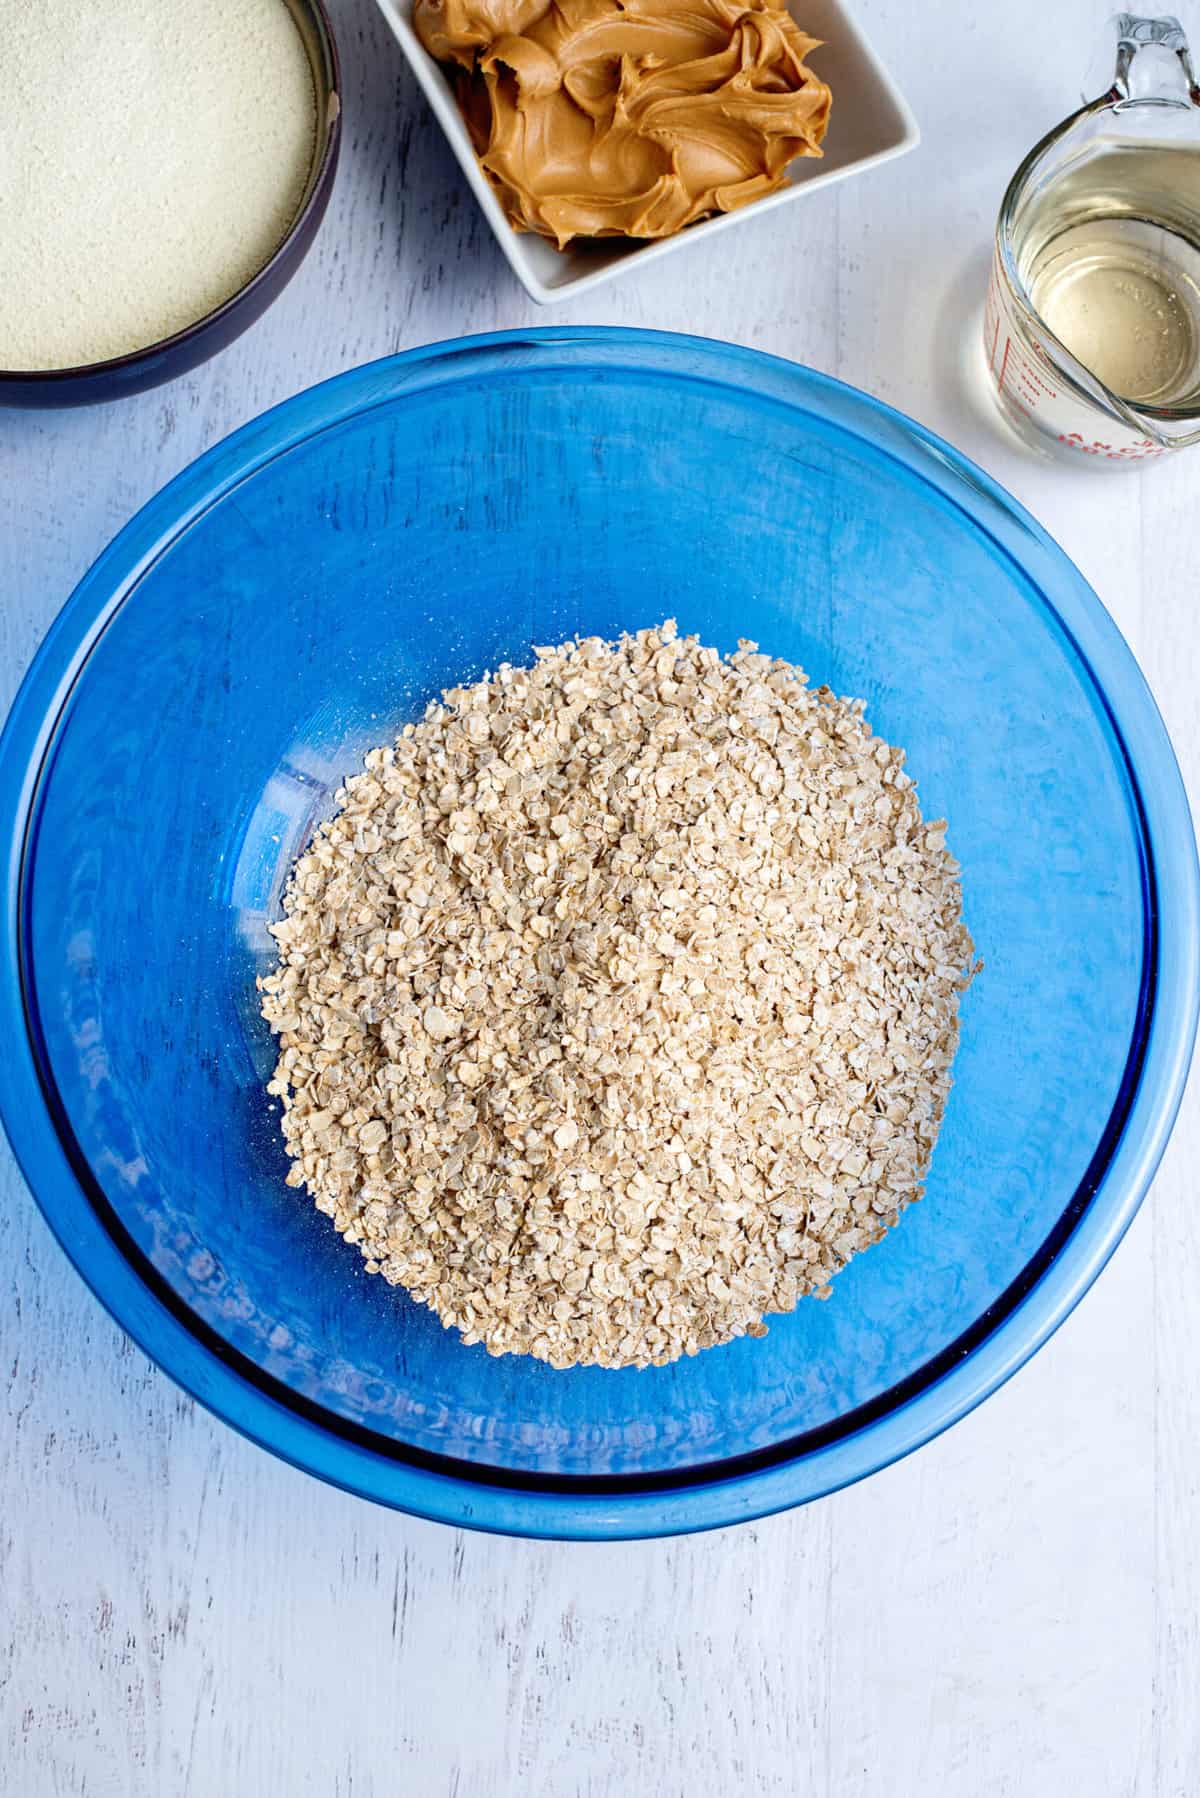 measure oats into bowl